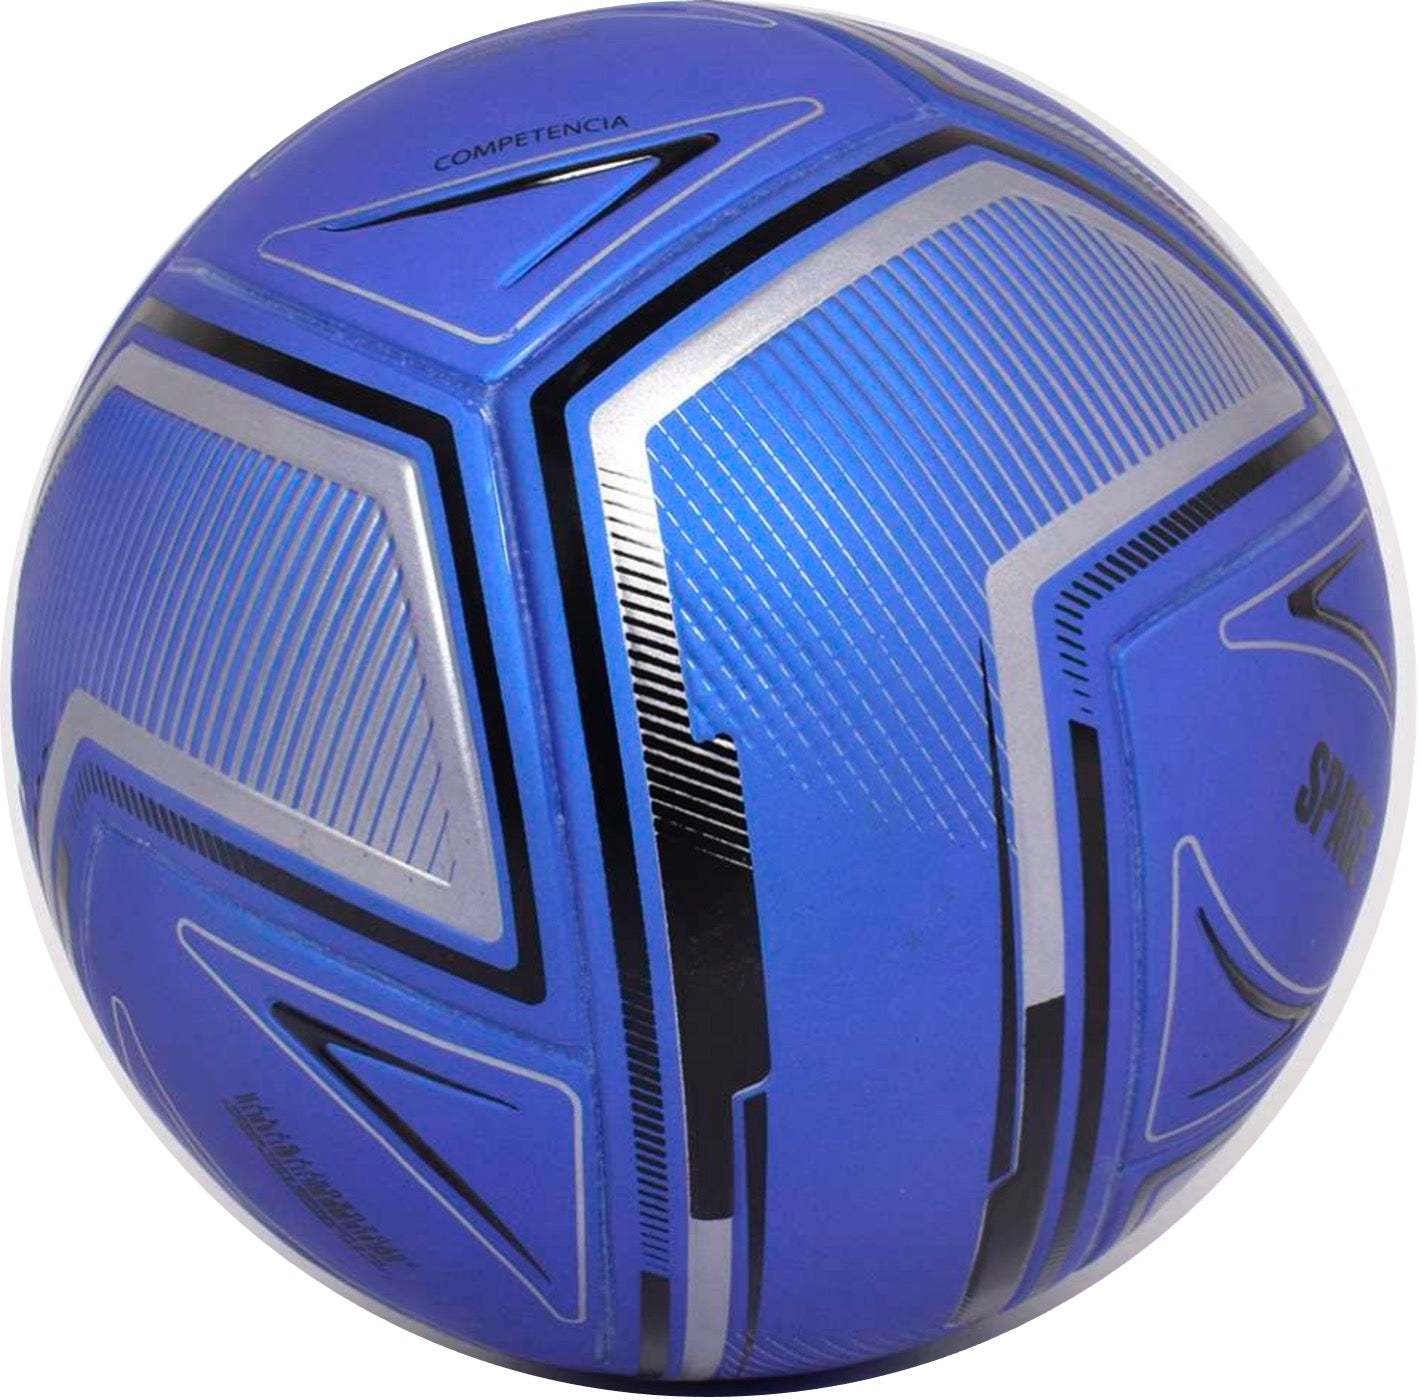 Balón de Futbol Sala Golty Space - PVC - Todo Terreno